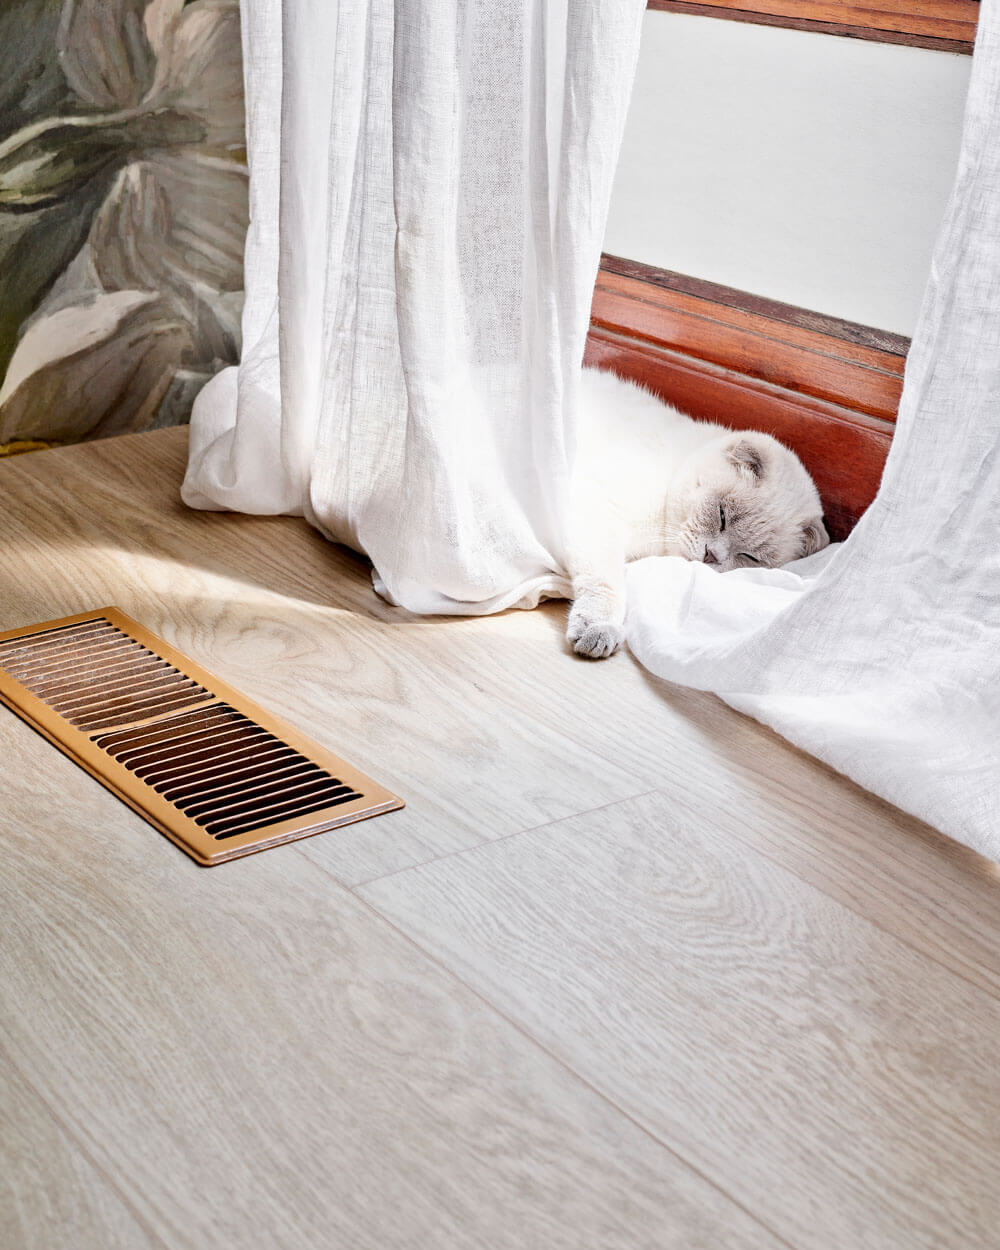 Белая кошка спит у оконной рамы на роскошном виниловом полу Moduleo LayRed Laurel Oak 51230 с тиснением в регистр.